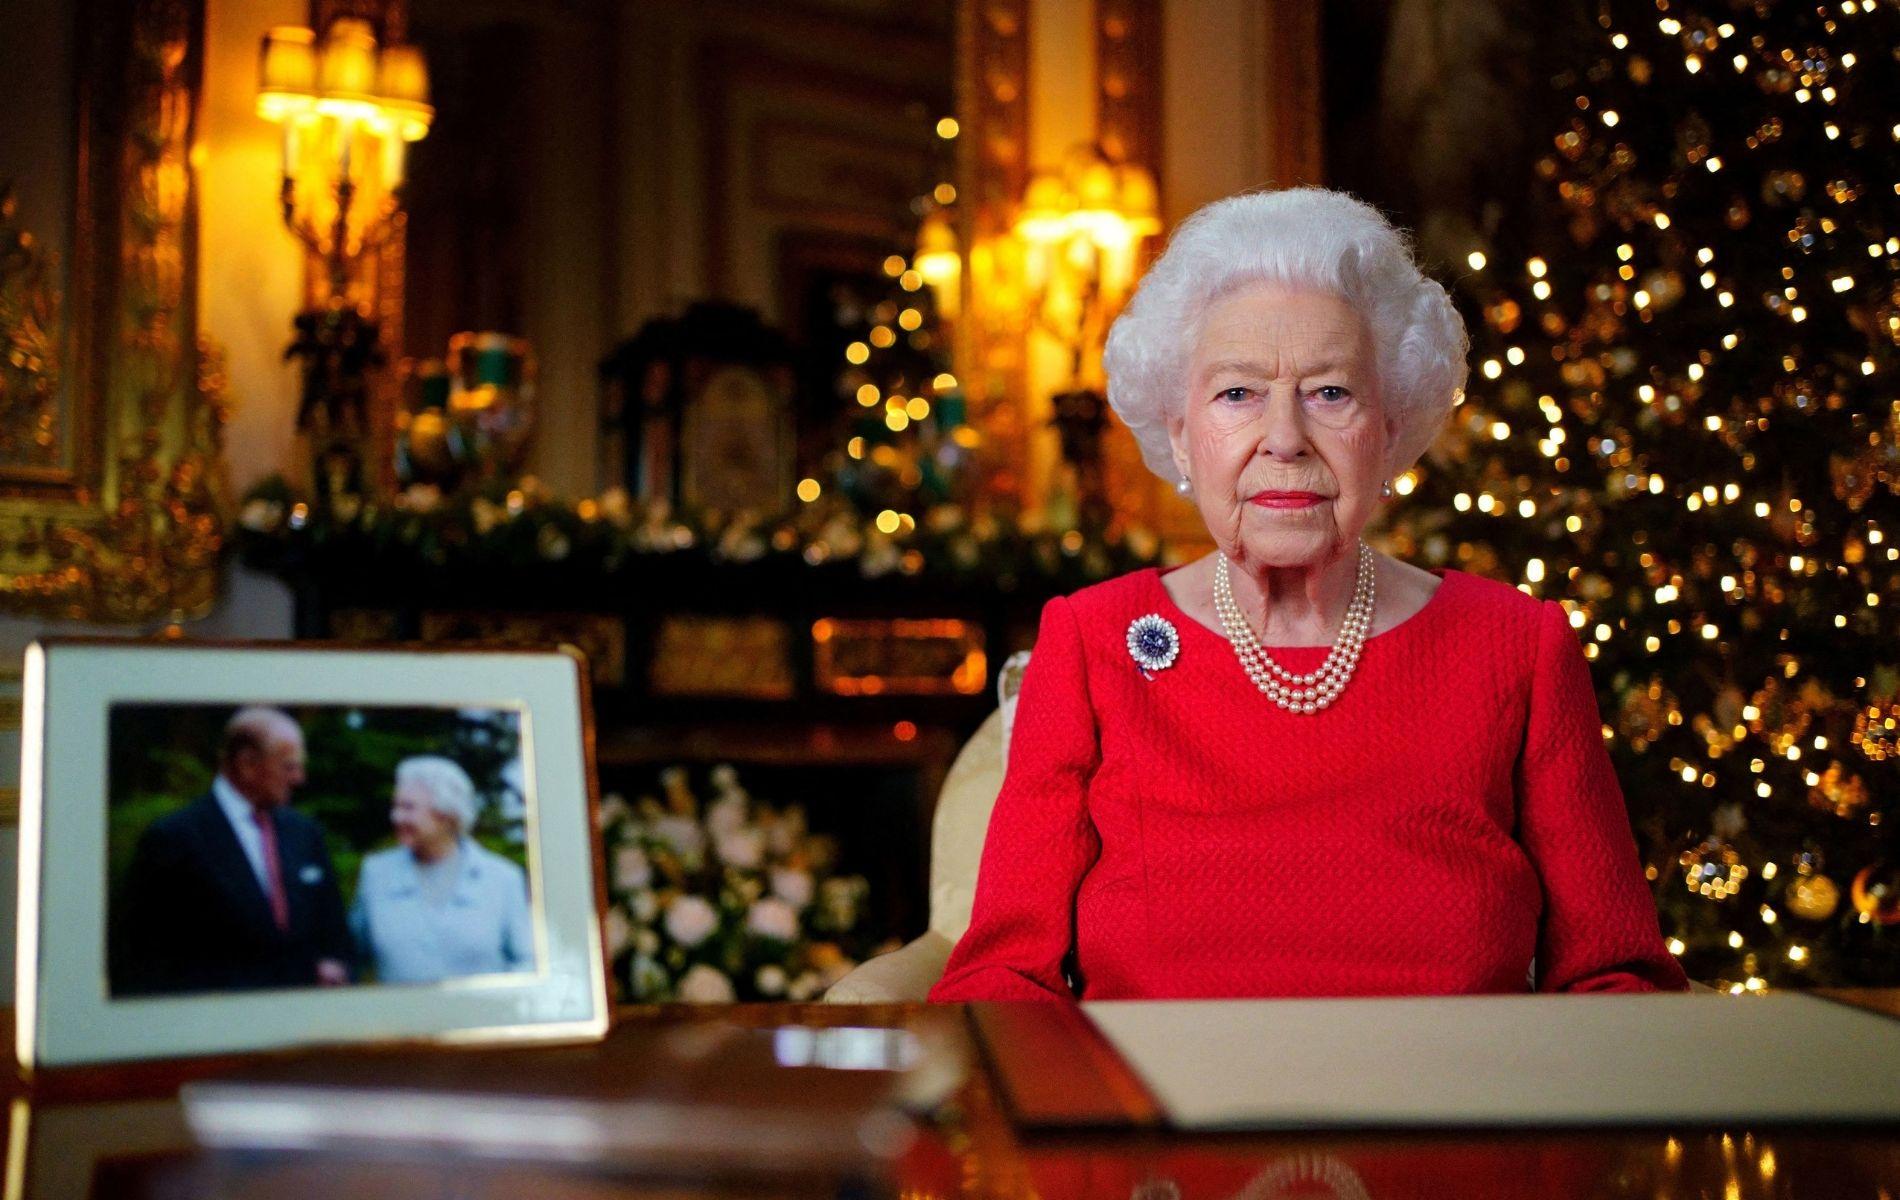 La broche du souvenir, une photo symbolique : Elizabeth II rendra hommage au prince Philip dans son discours de Noël